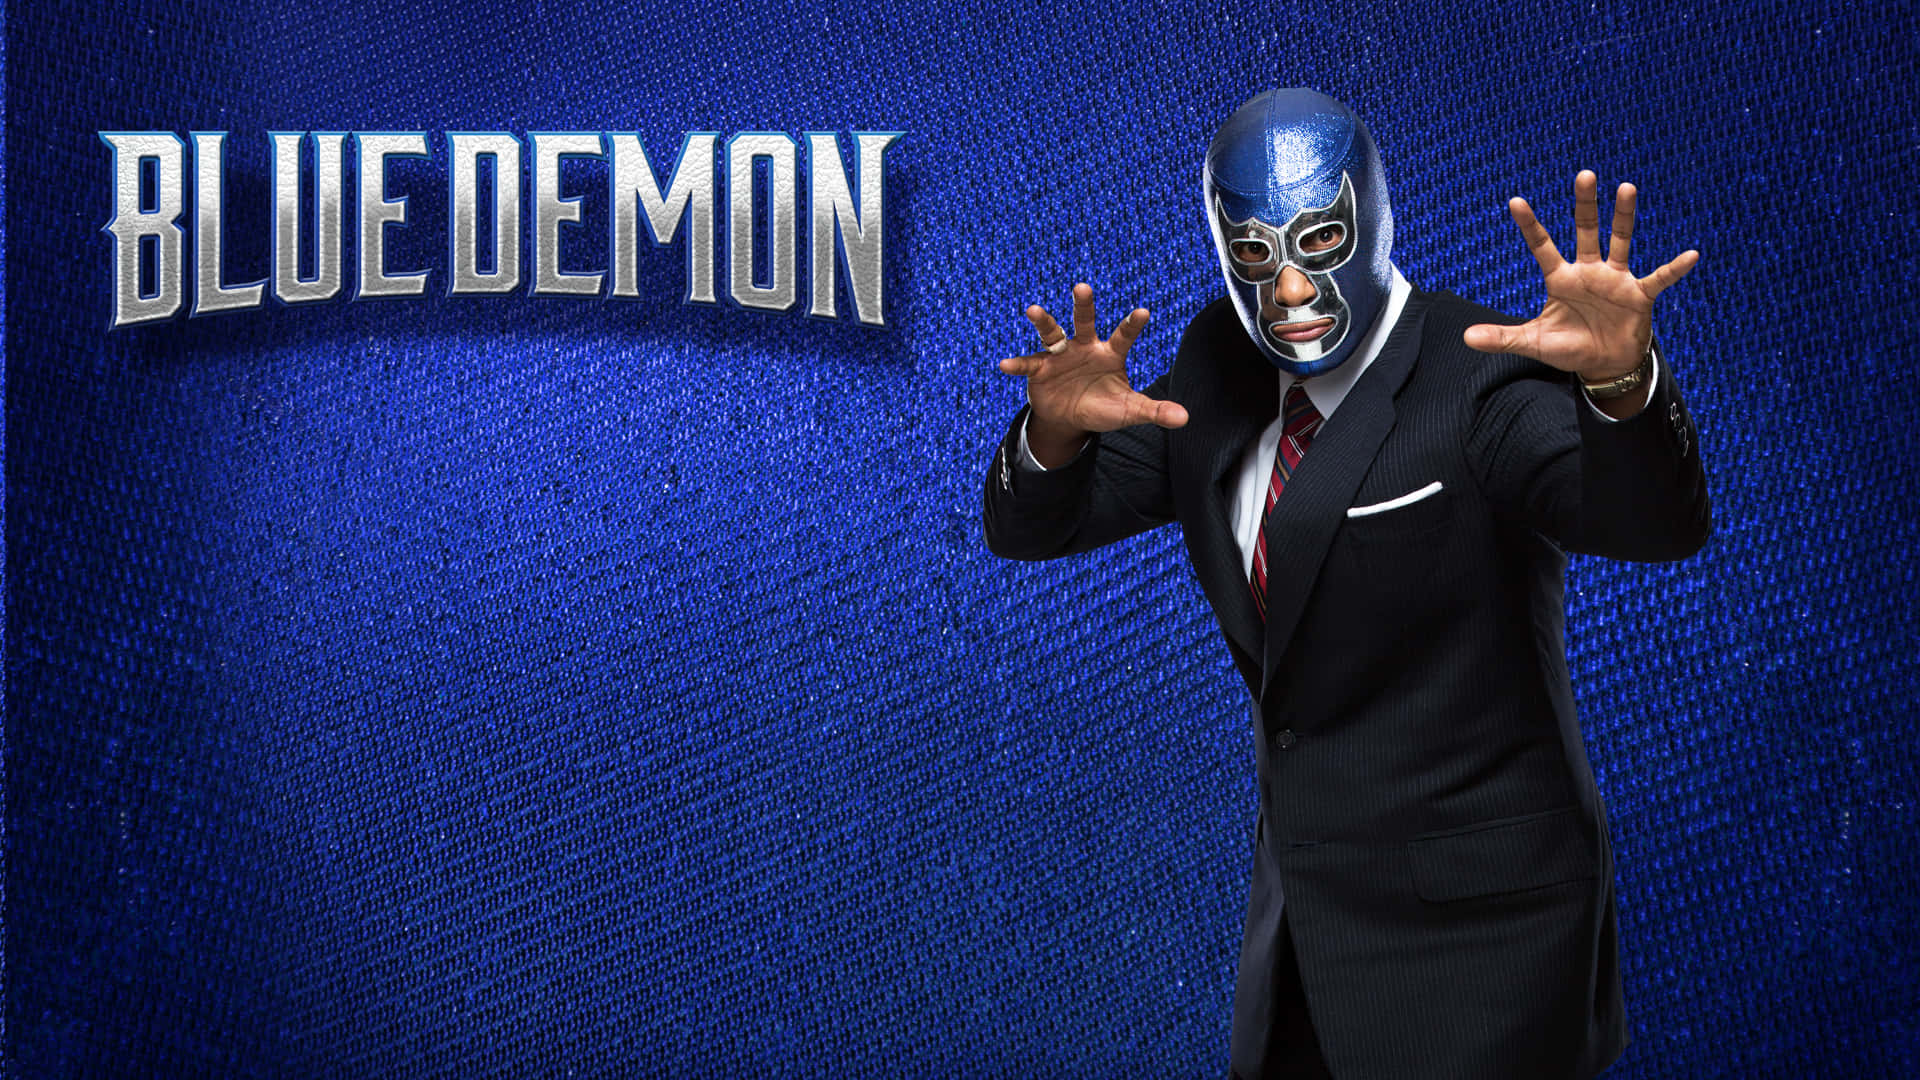 Blue Demon Mexican Digital Arts Wallpaper